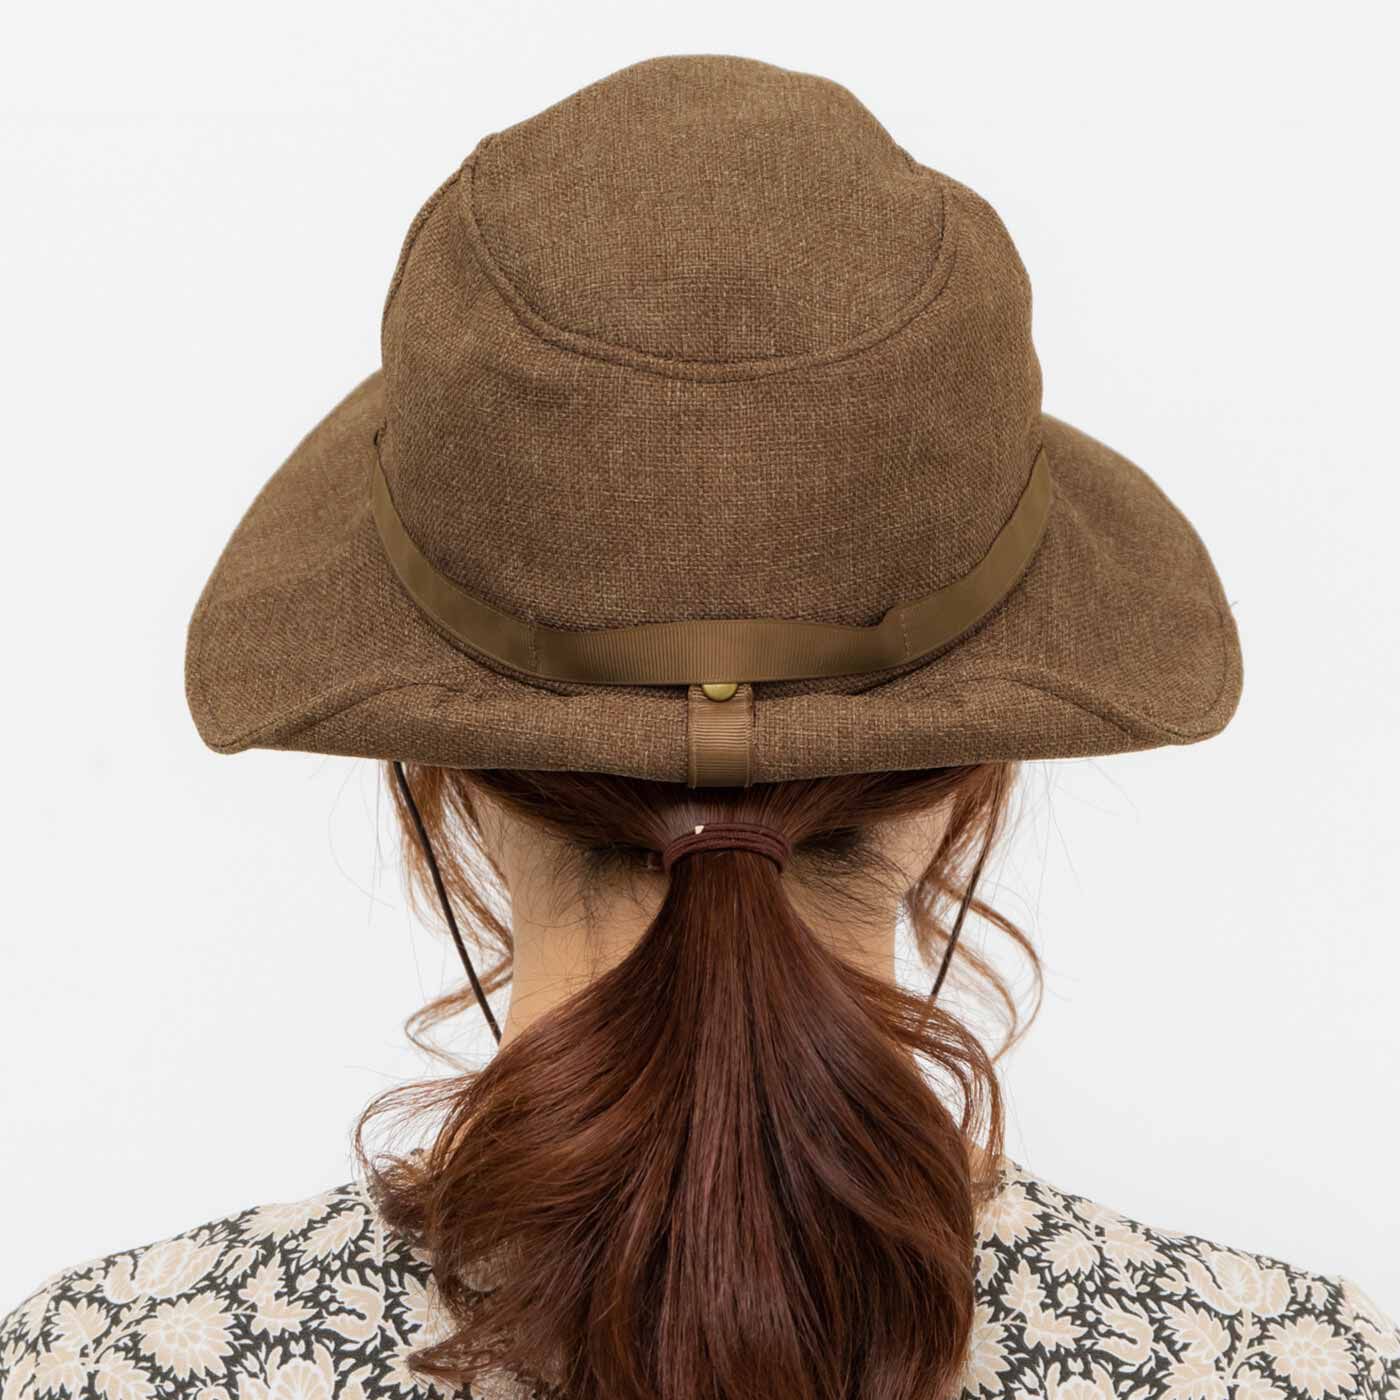 Real Stock|UP.de　季節を問わずかぶりたい 風飛びしにくい たためるUVカット帽子〈アッシュ〉|スナップを留めれば後ろで髪を結んでもかぶれます。　※お届けするカラーとは異なります。